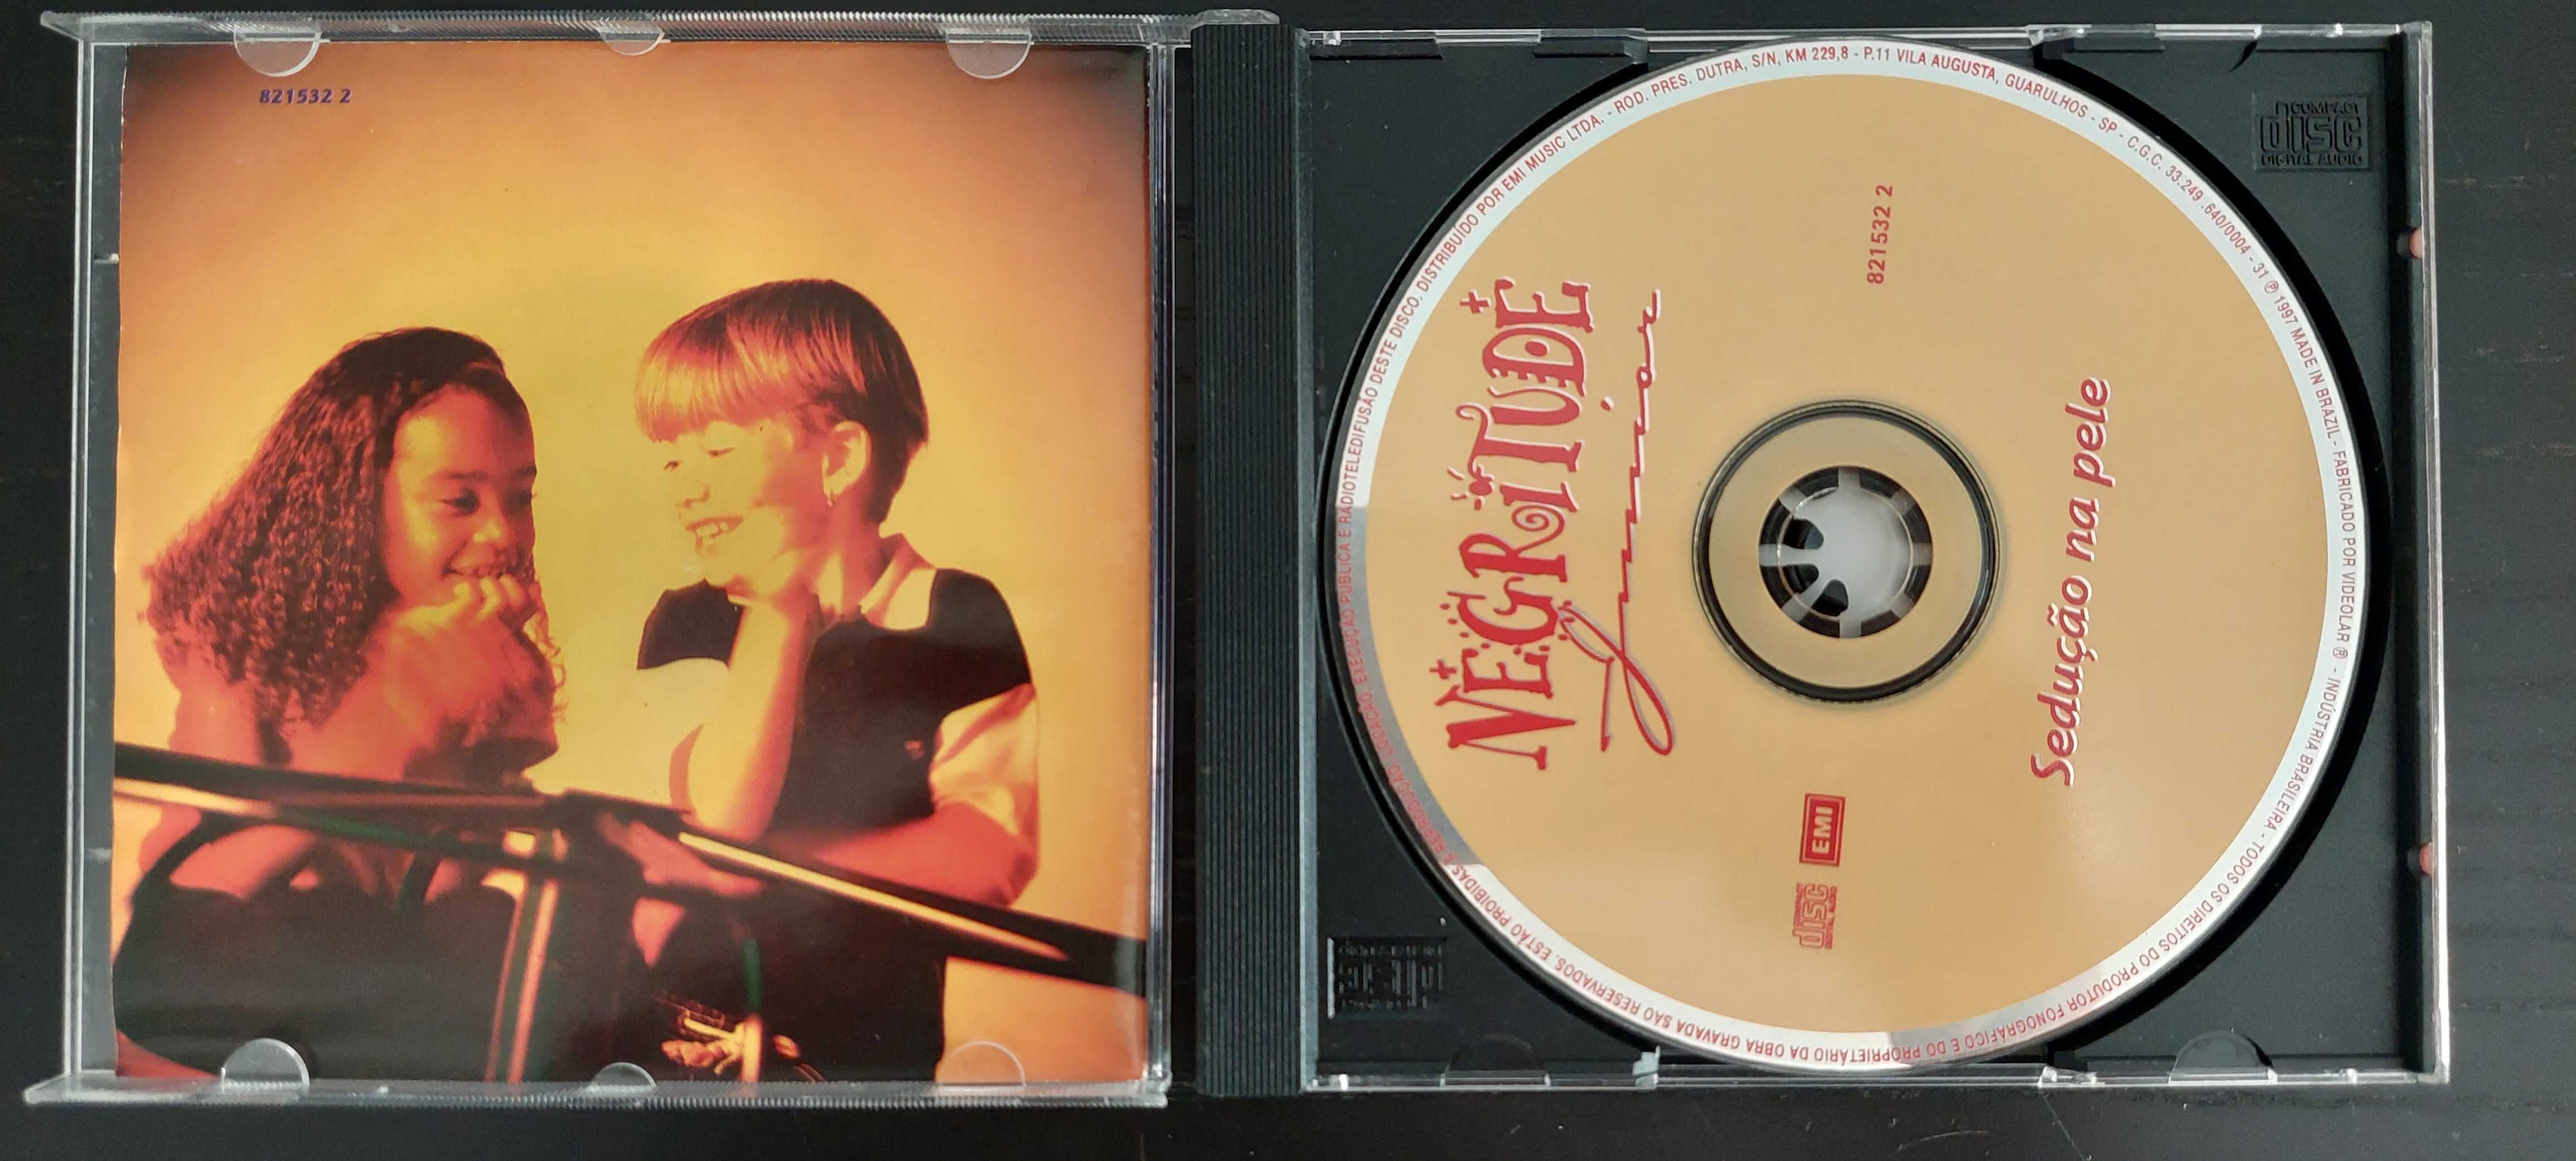 CD Original Negritude Junior – sedução na pele